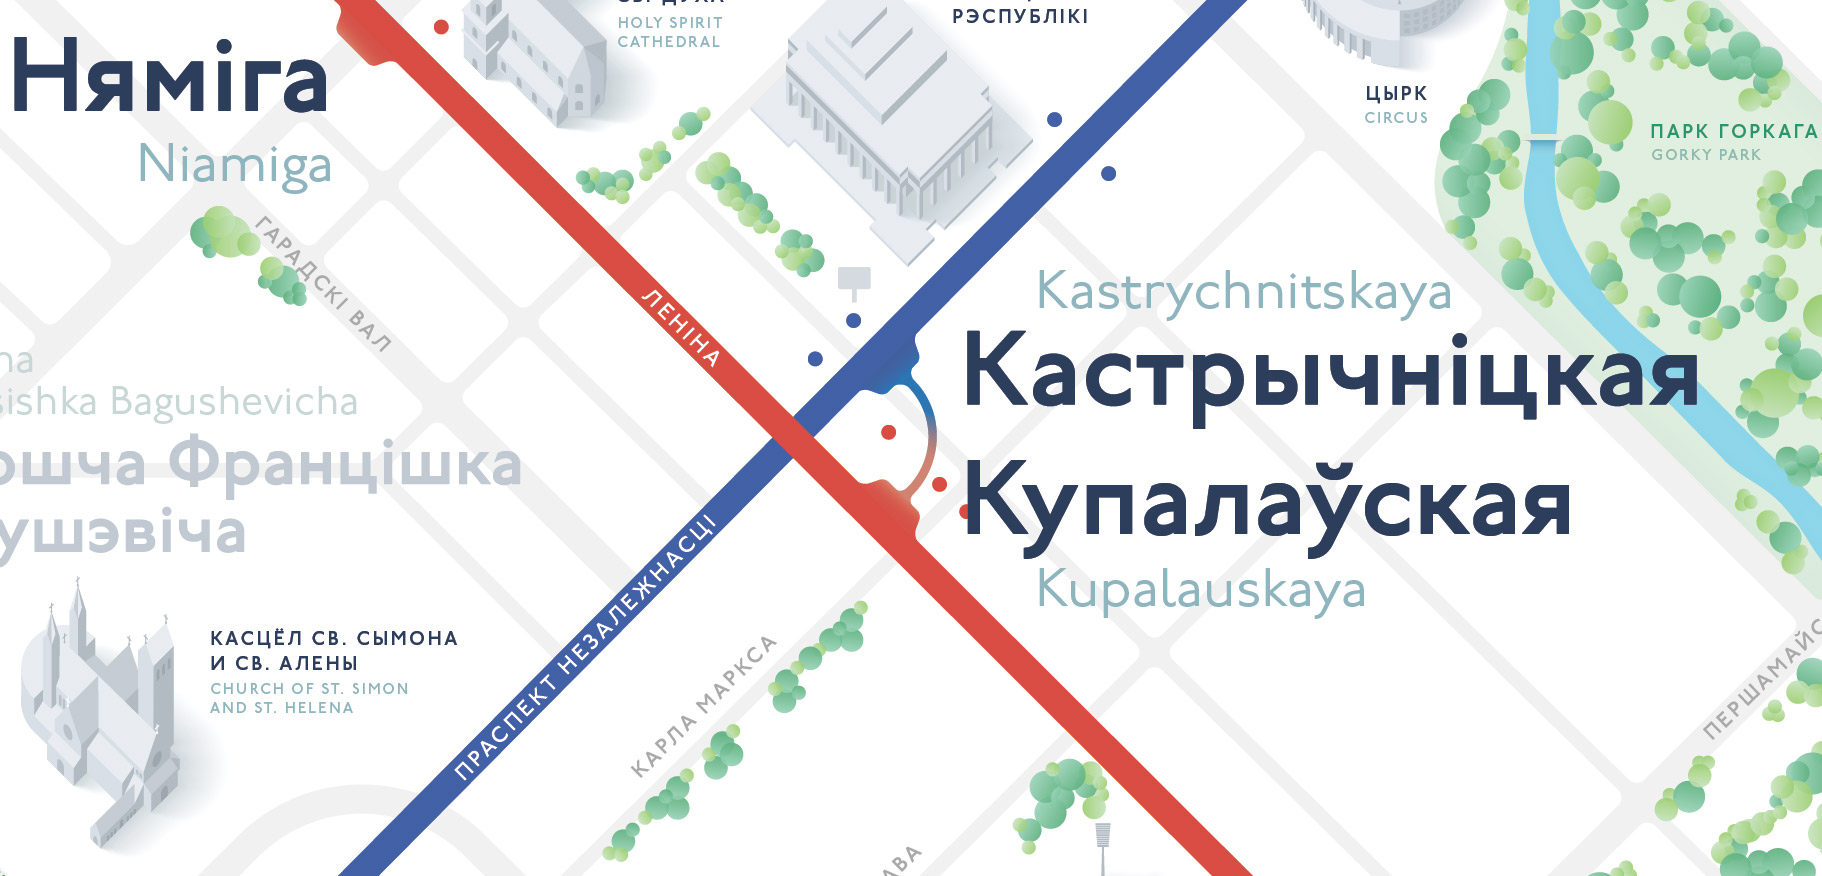 Схема метро Минска